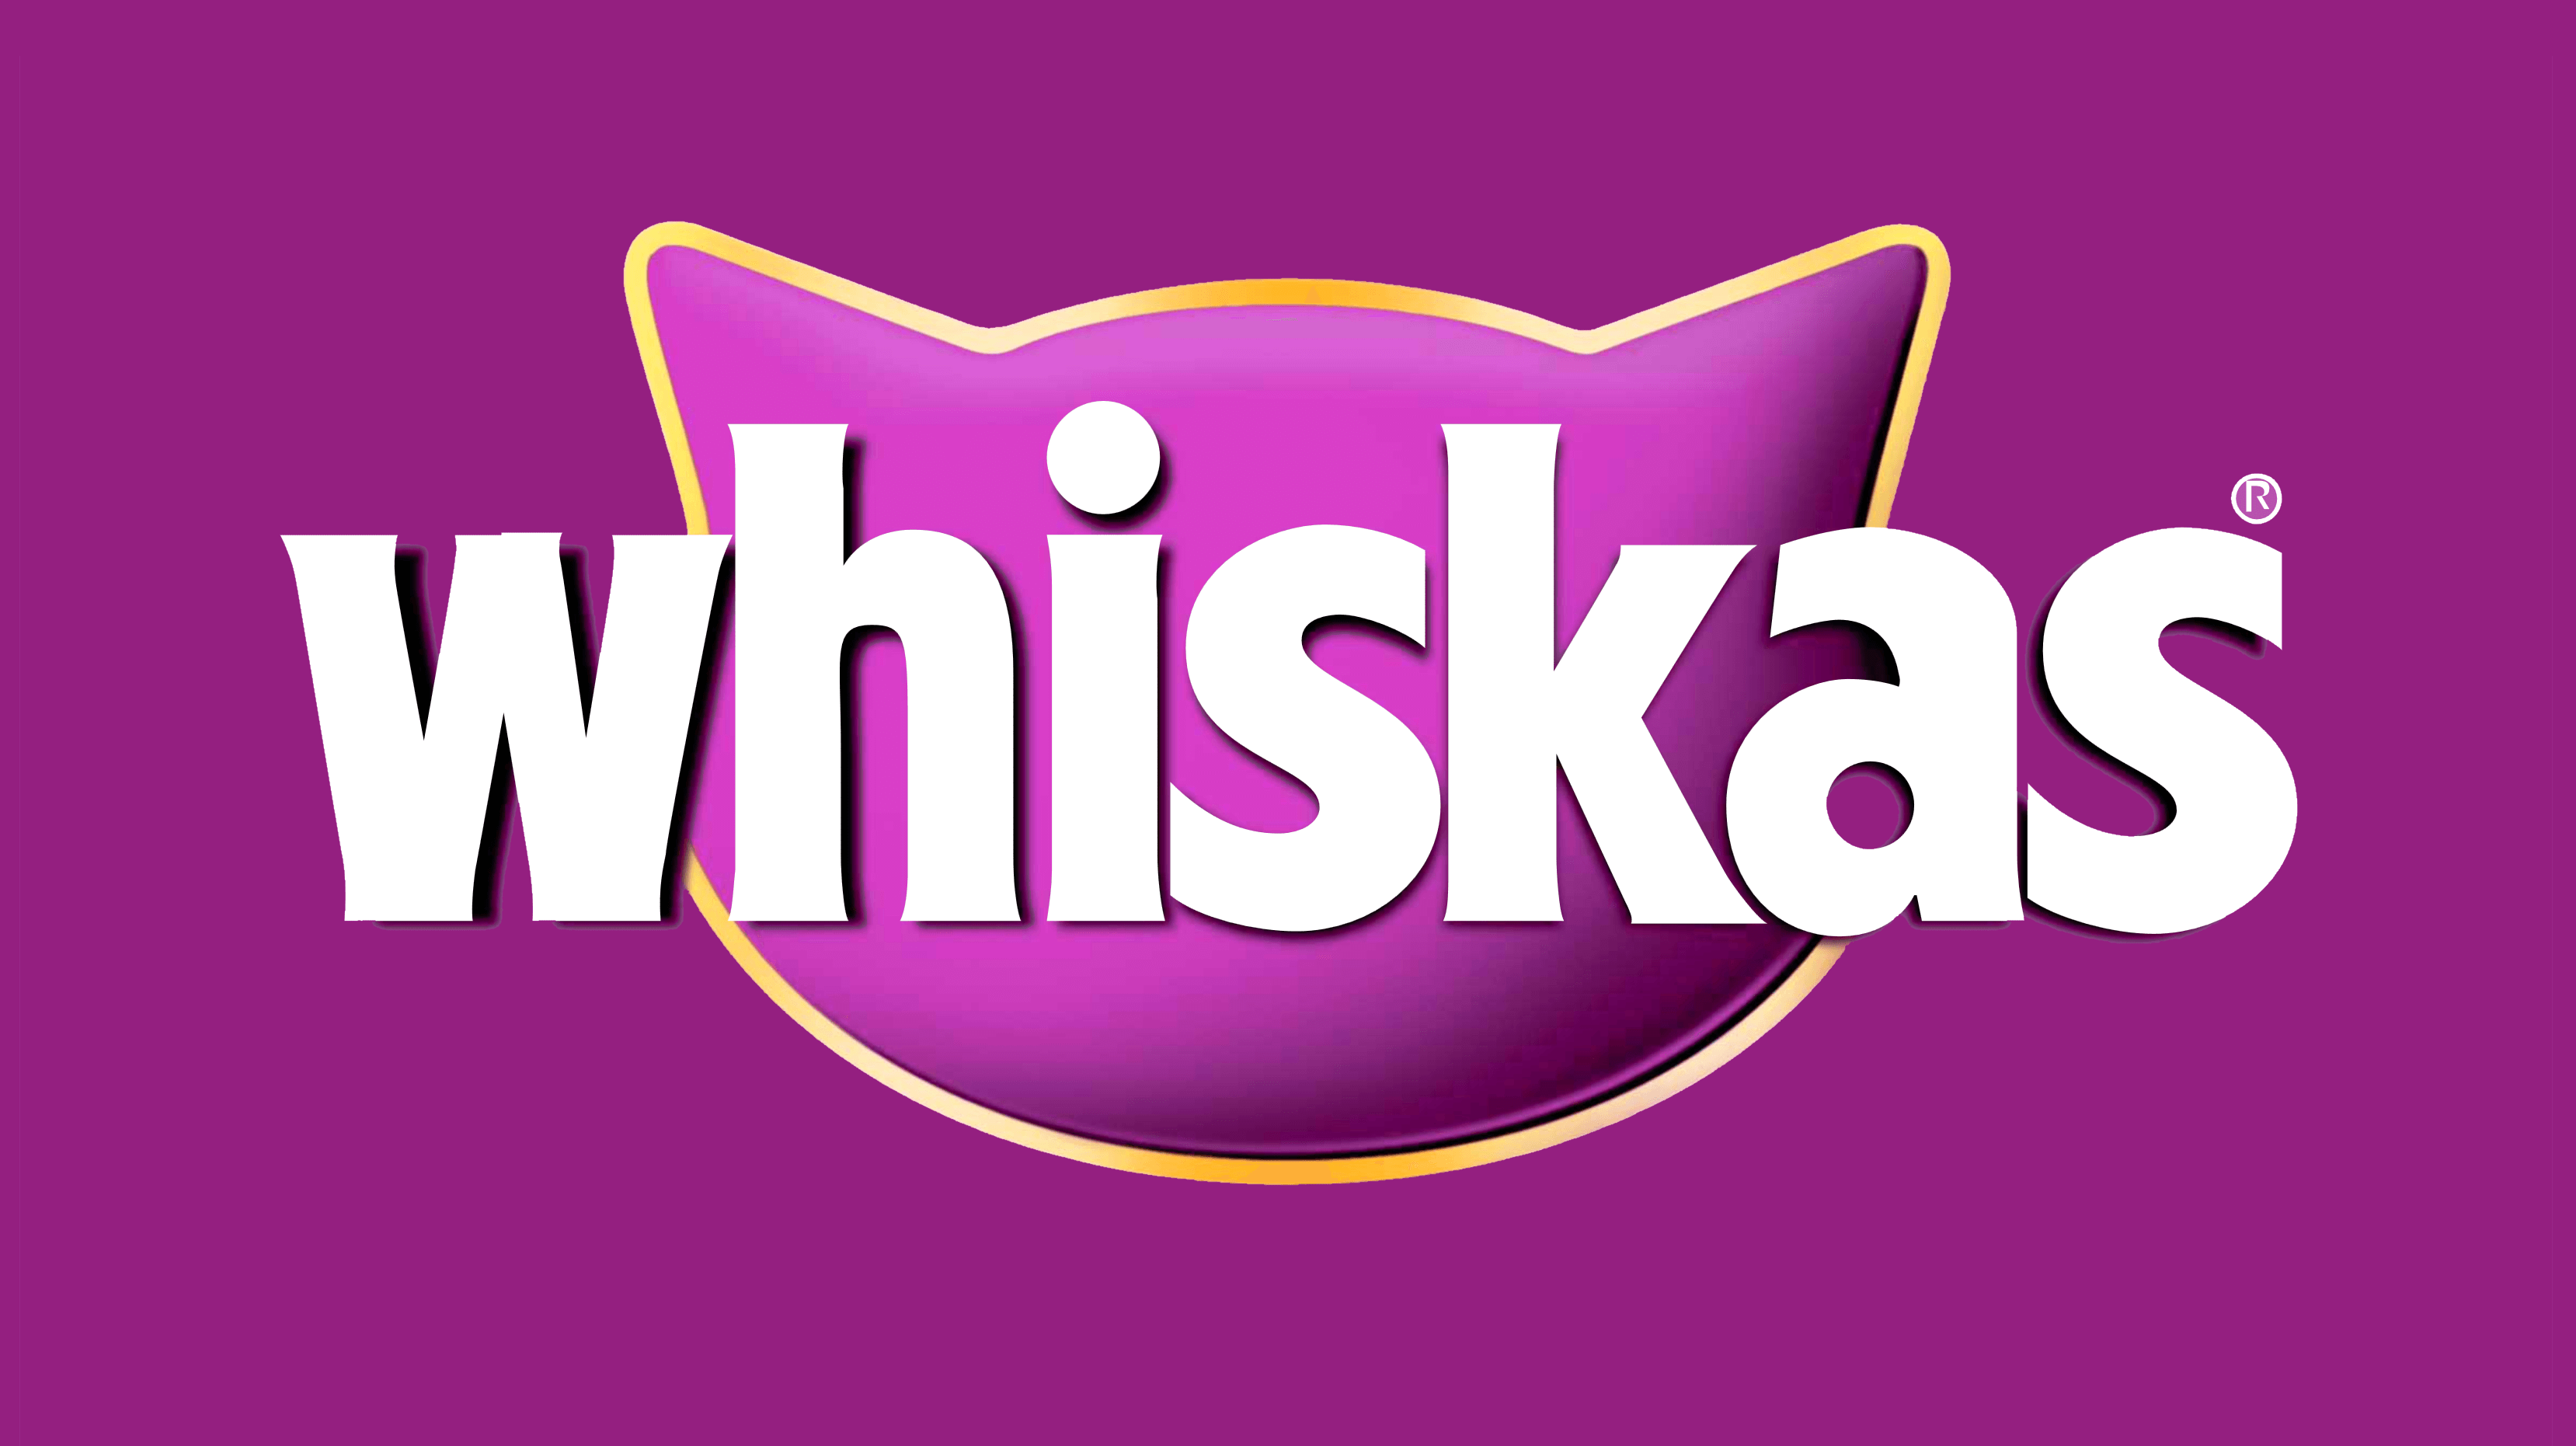 Whiskas logo, logotype